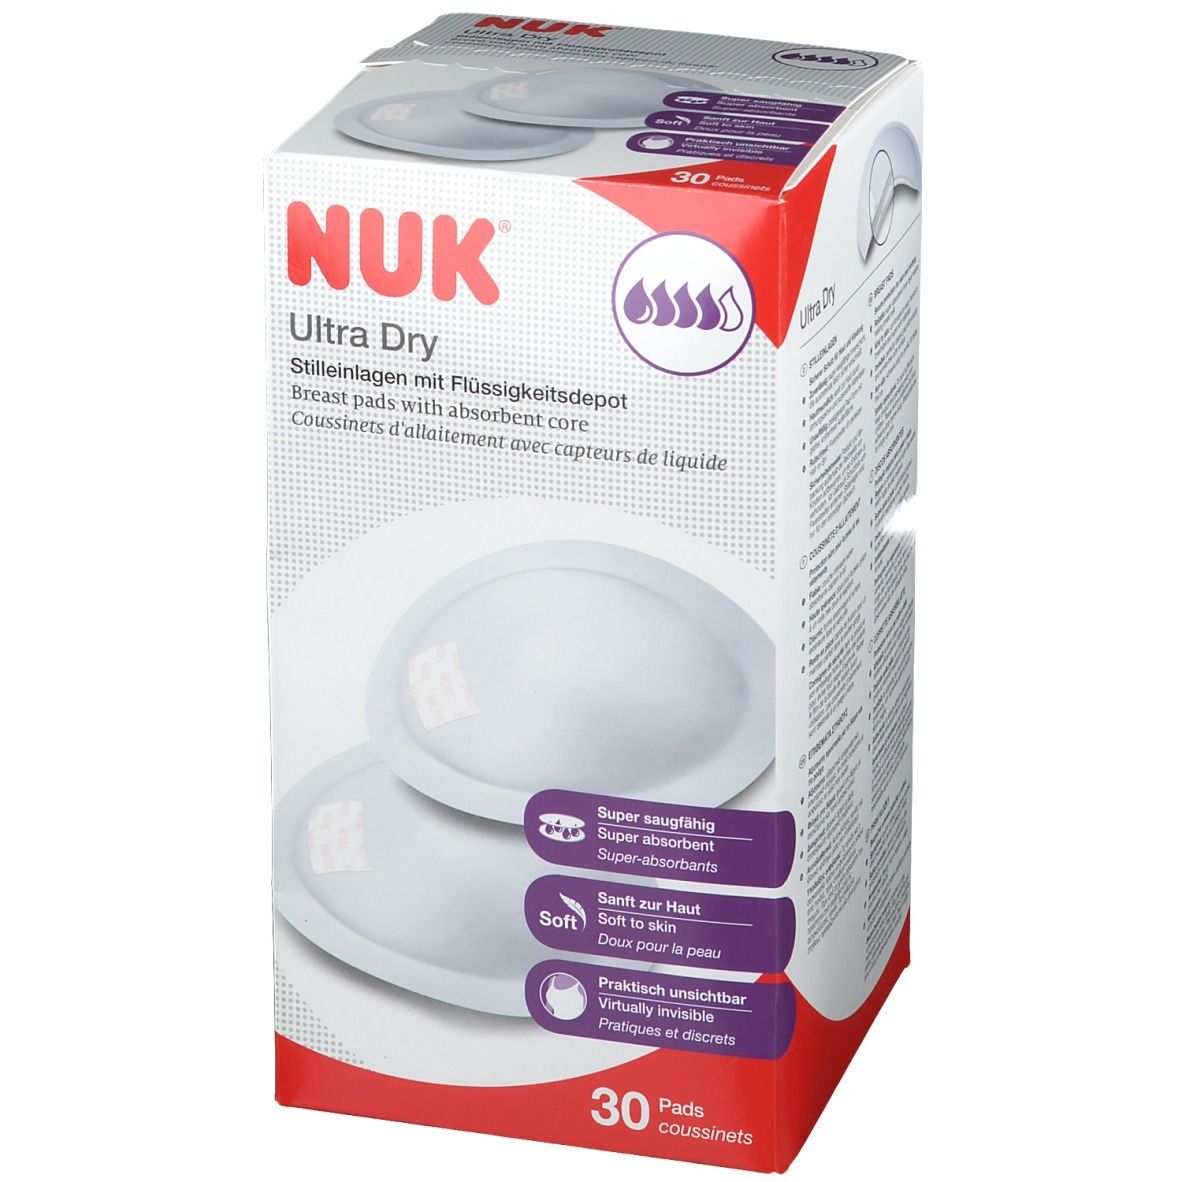 NUK® Ultra Dry Stilleinlagen 30 Pads